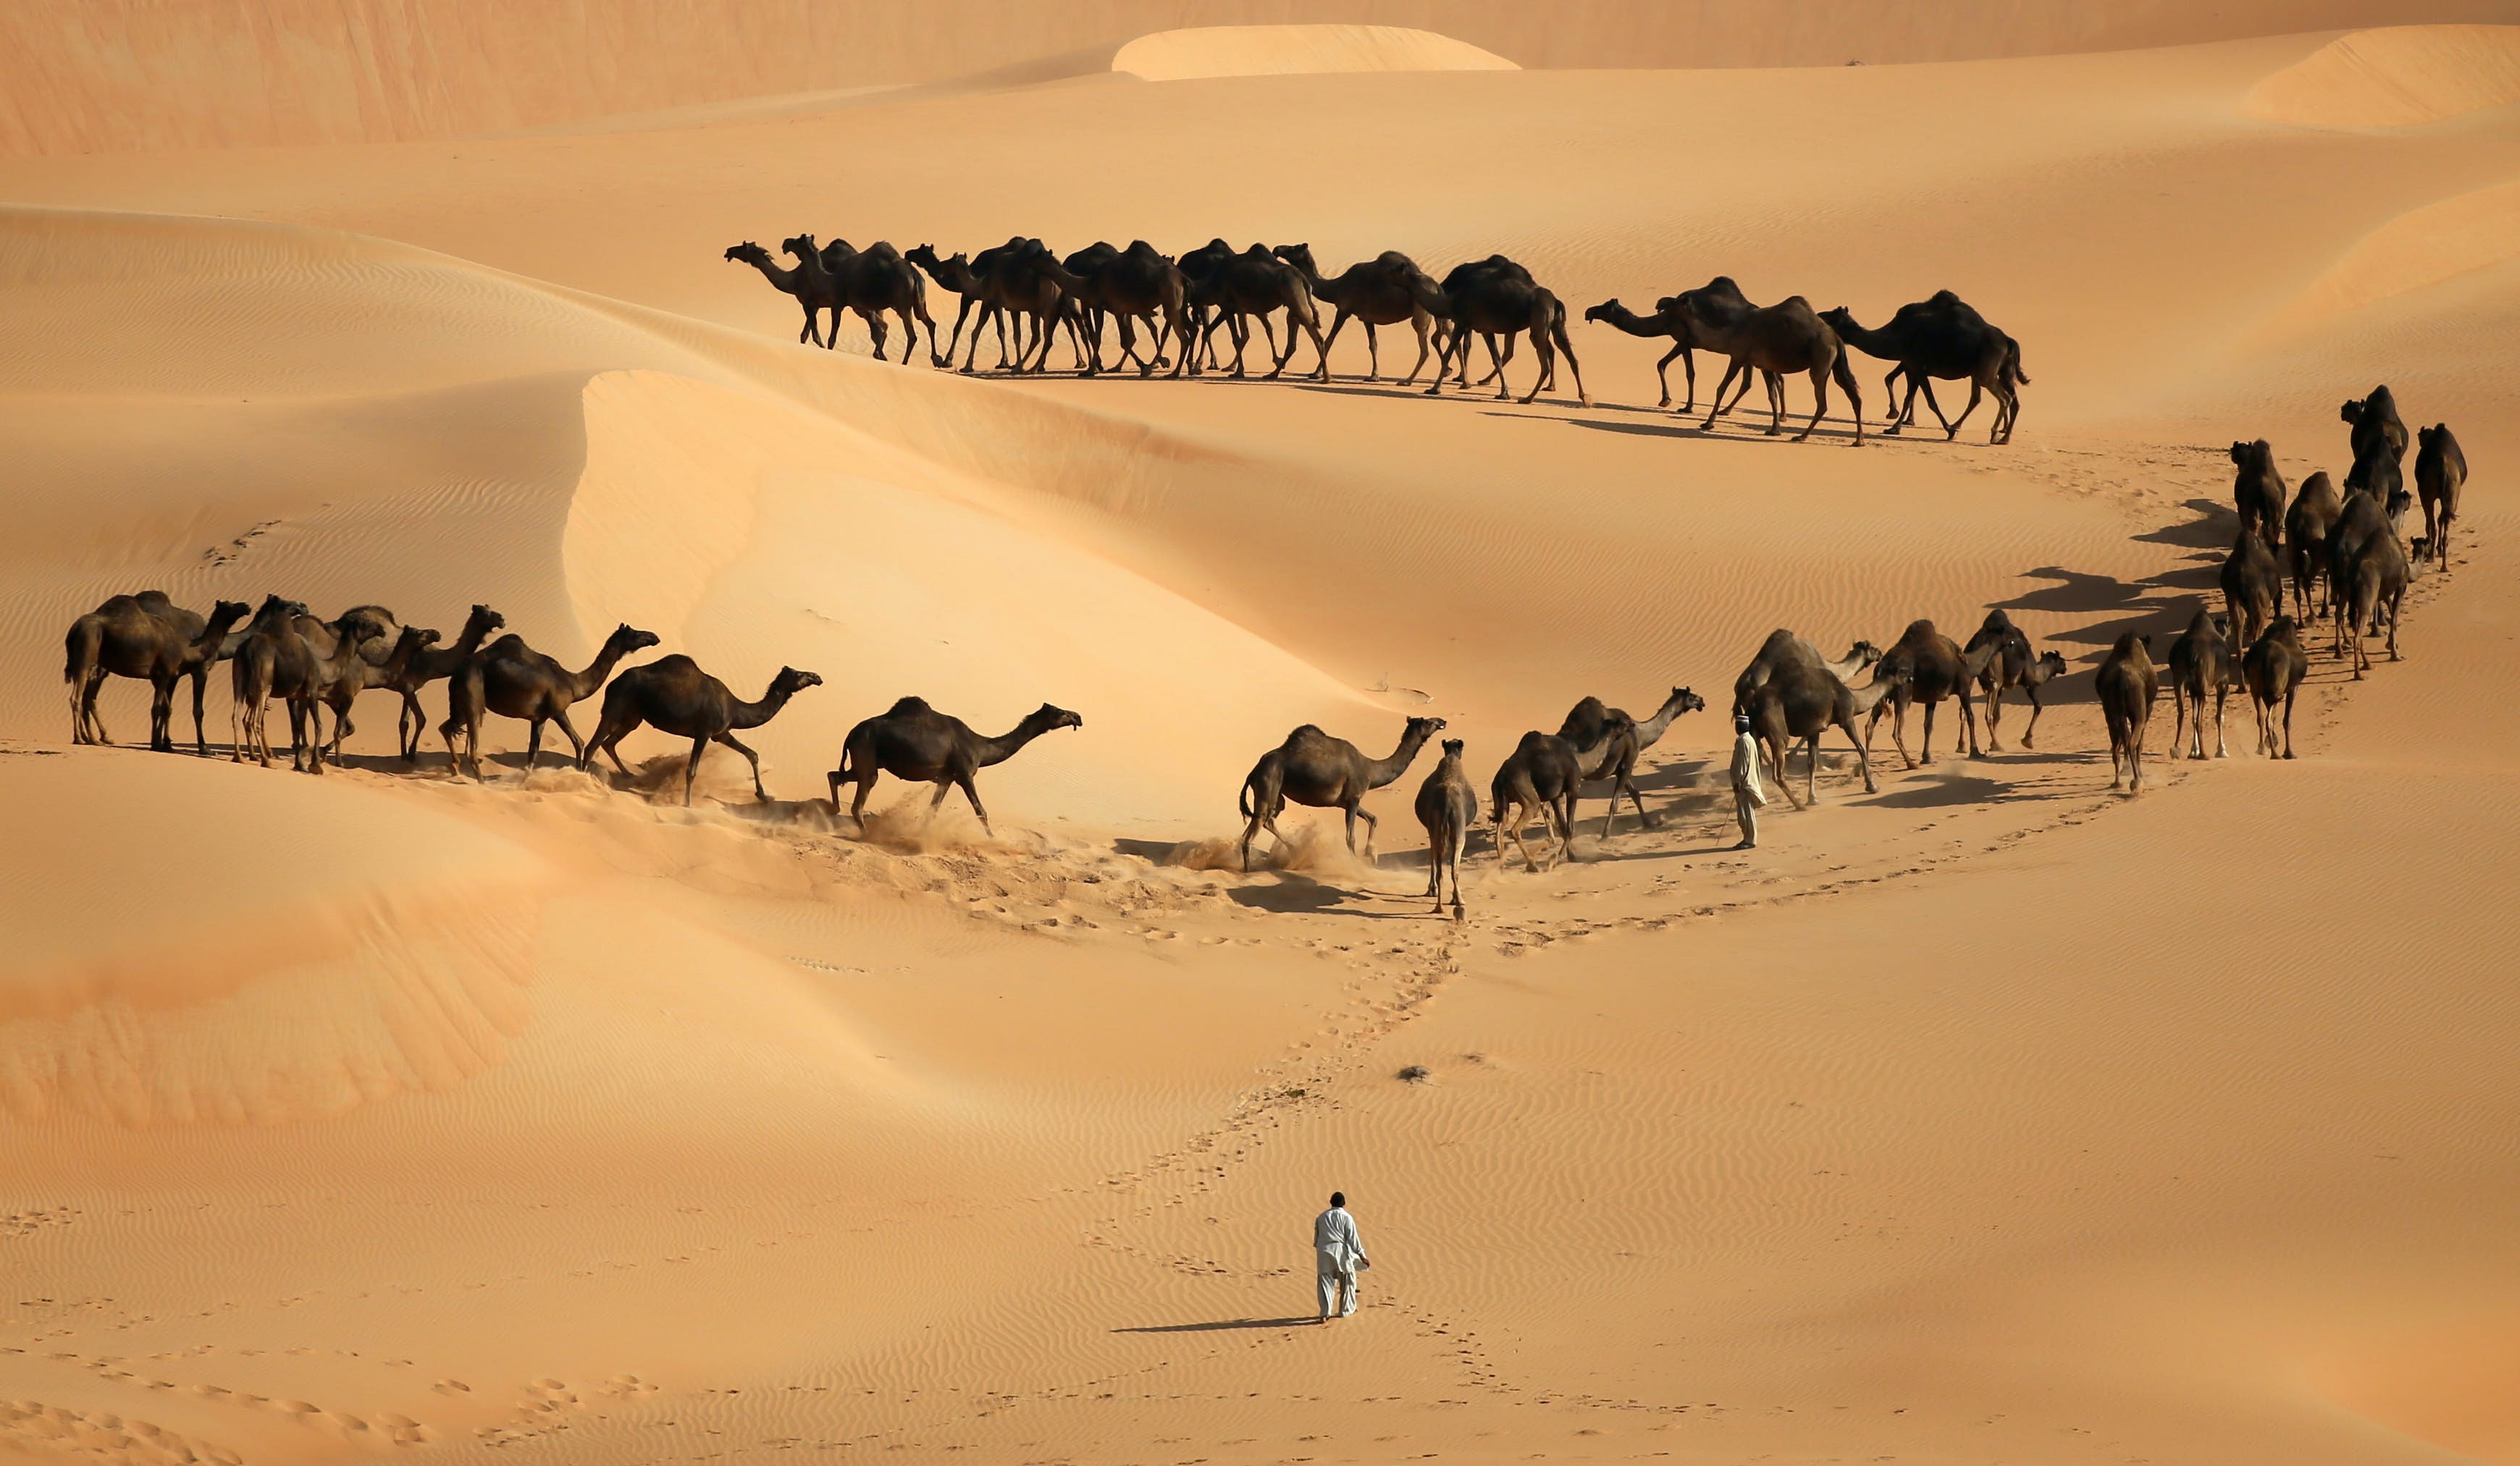 Liwa Desert Camel